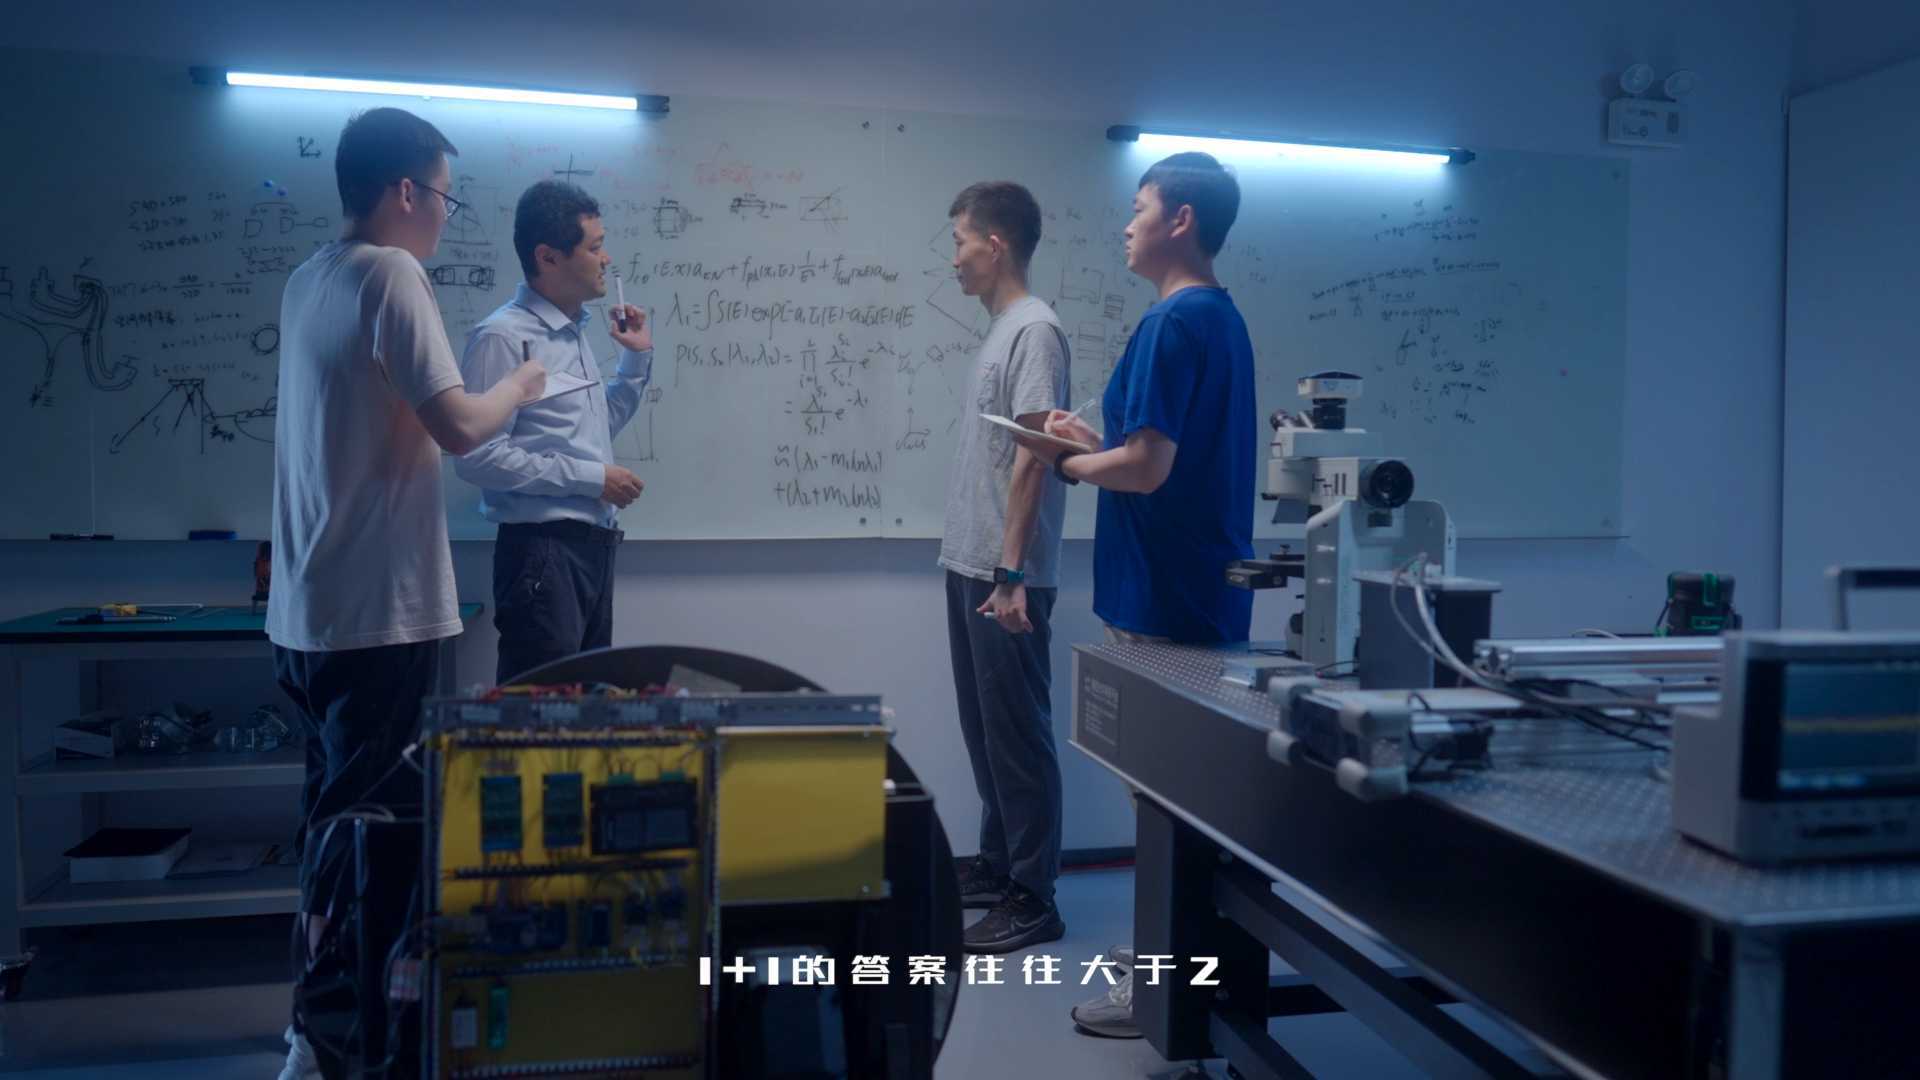 《未来我答》-深圳湾实验室夏立营预热宣传片 Dir.cut